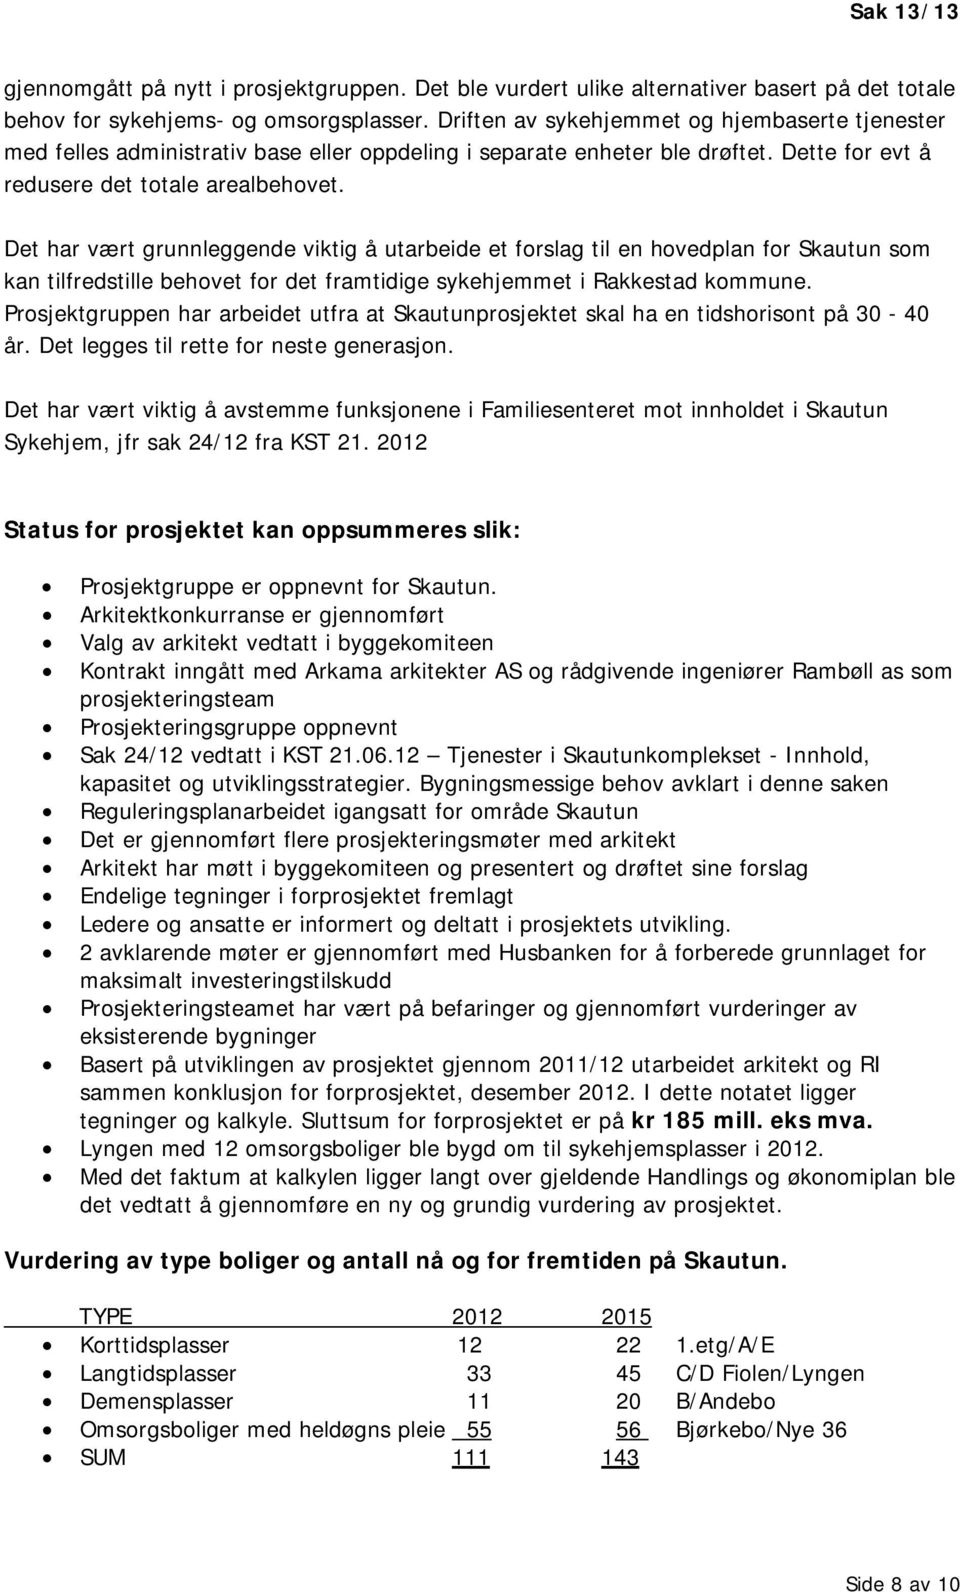 Det har vært grunnleggende viktig å utarbeide et forslag til en hovedplan for Skautun som kan tilfredstille behovet for det framtidige sykehjemmet i Rakkestad kommune.